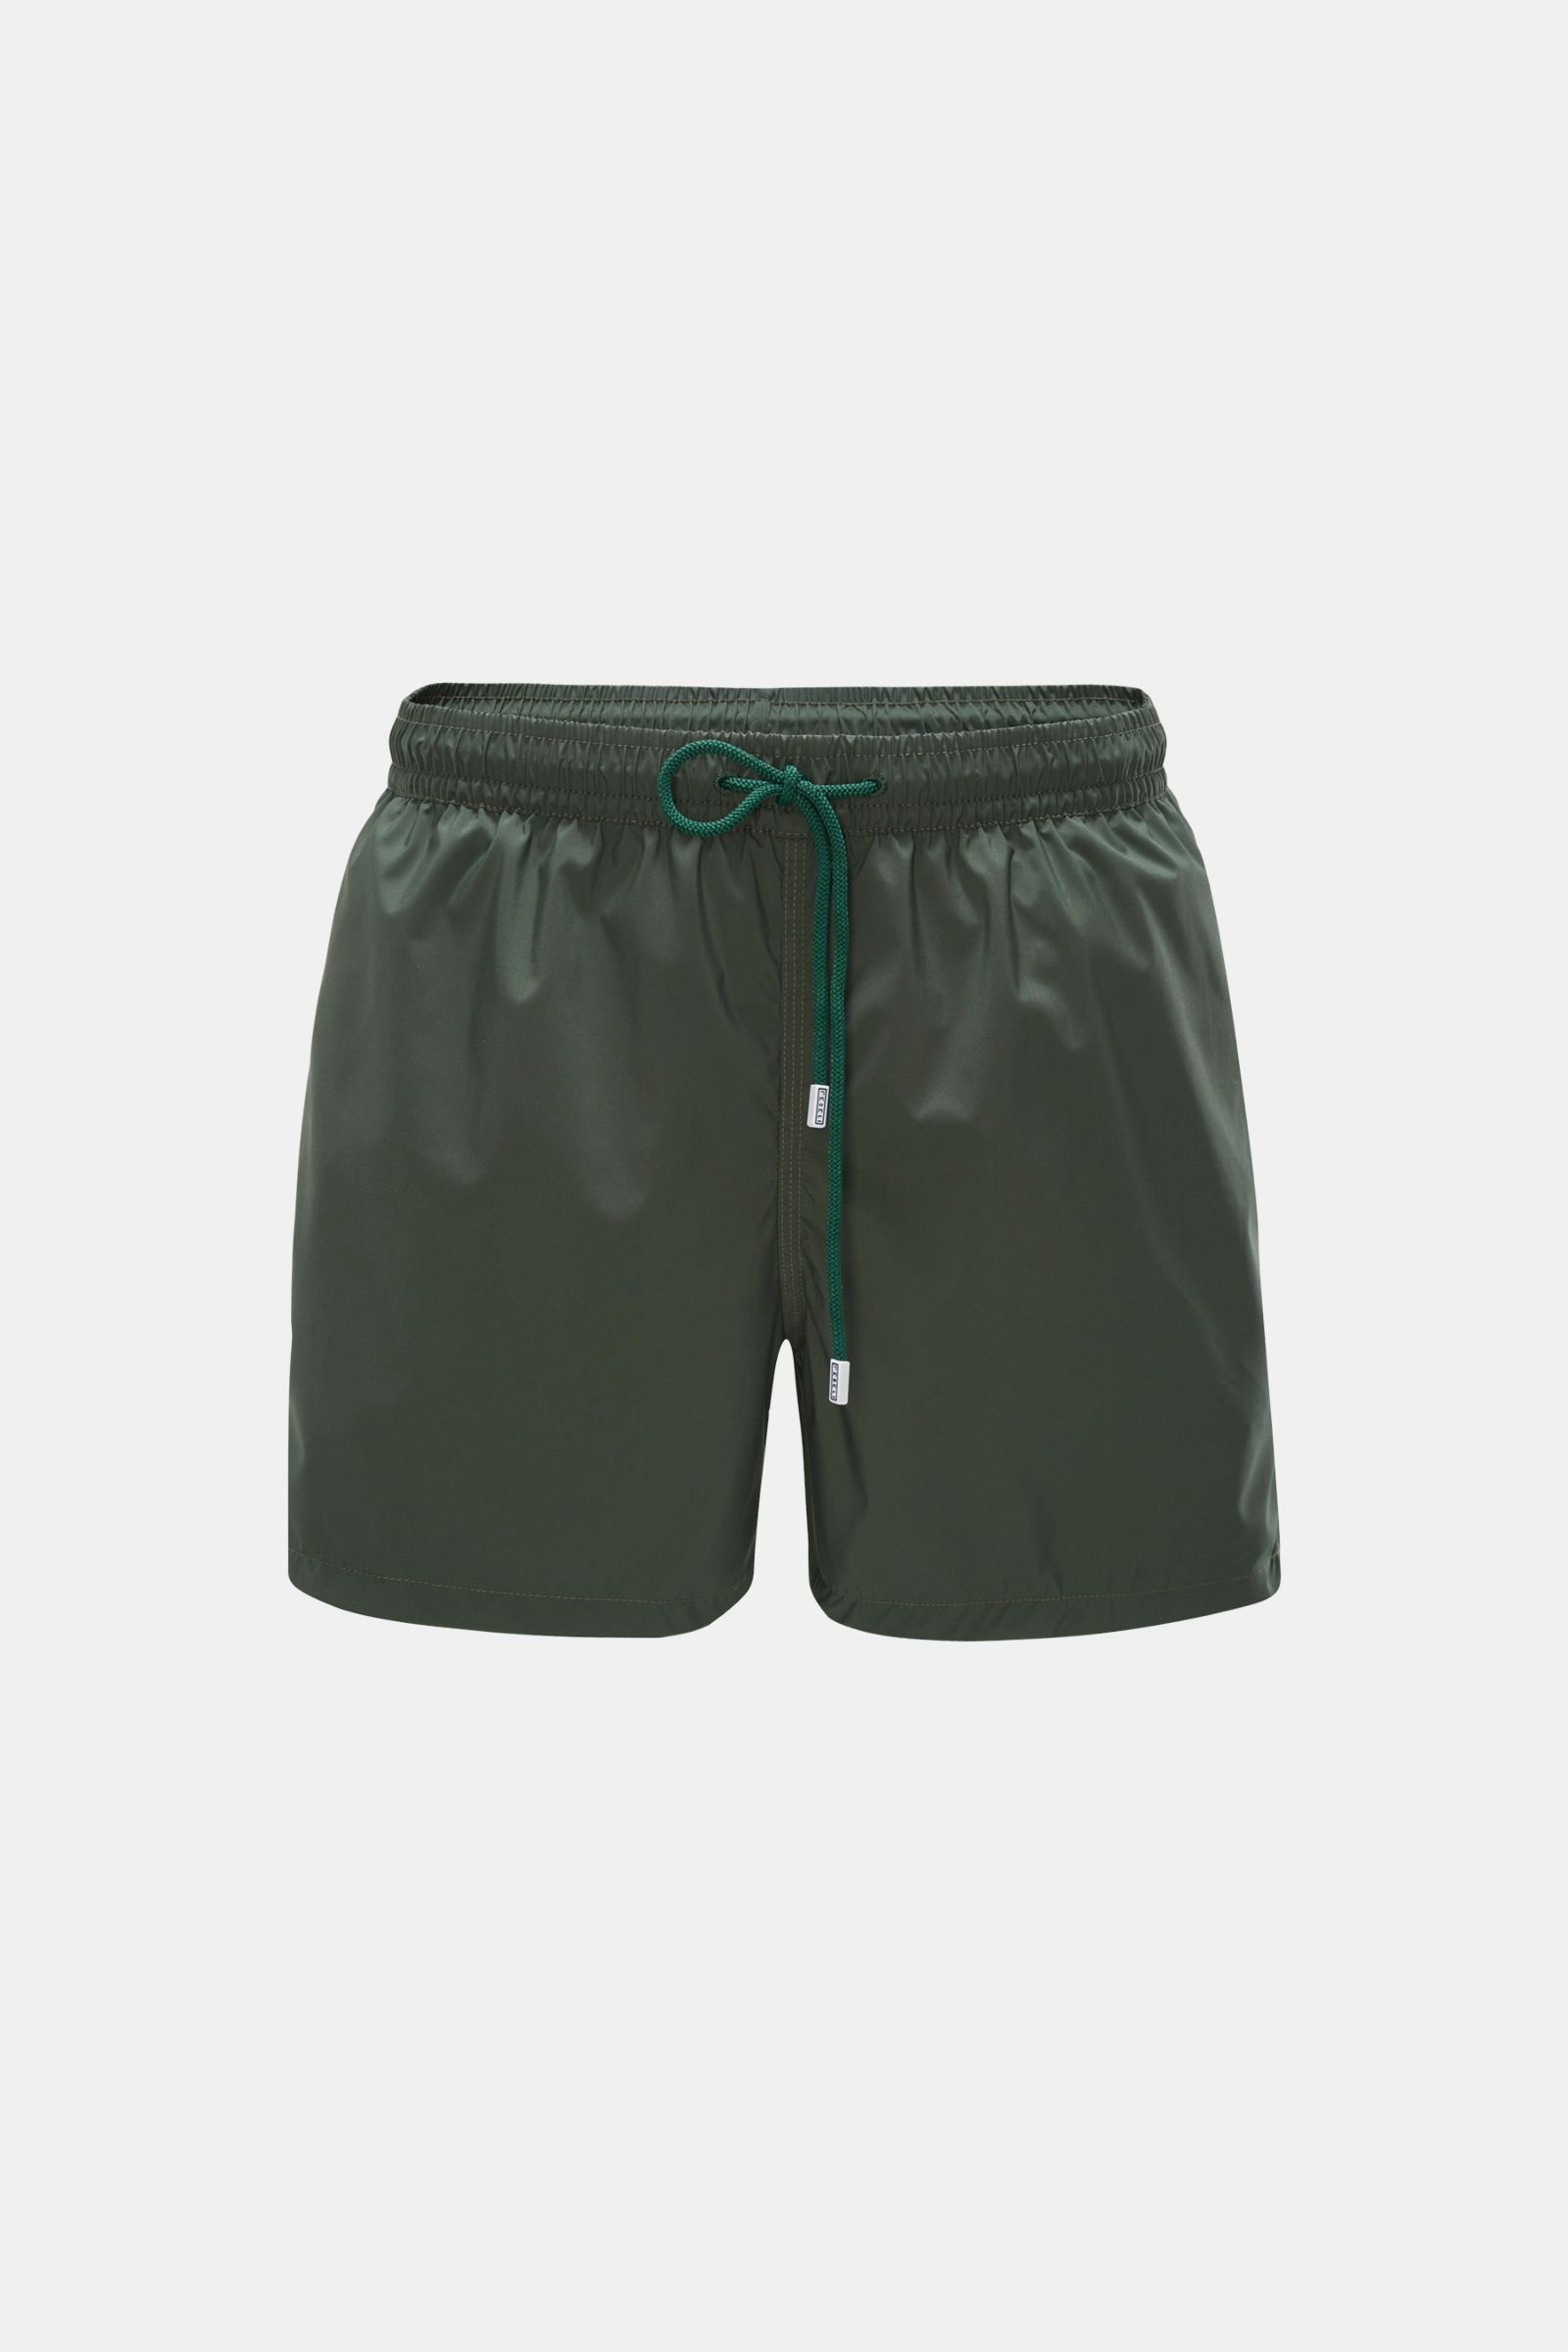 FEDELI swim shorts 'Madeira Airstop' dark green | BRAUN Hamburg